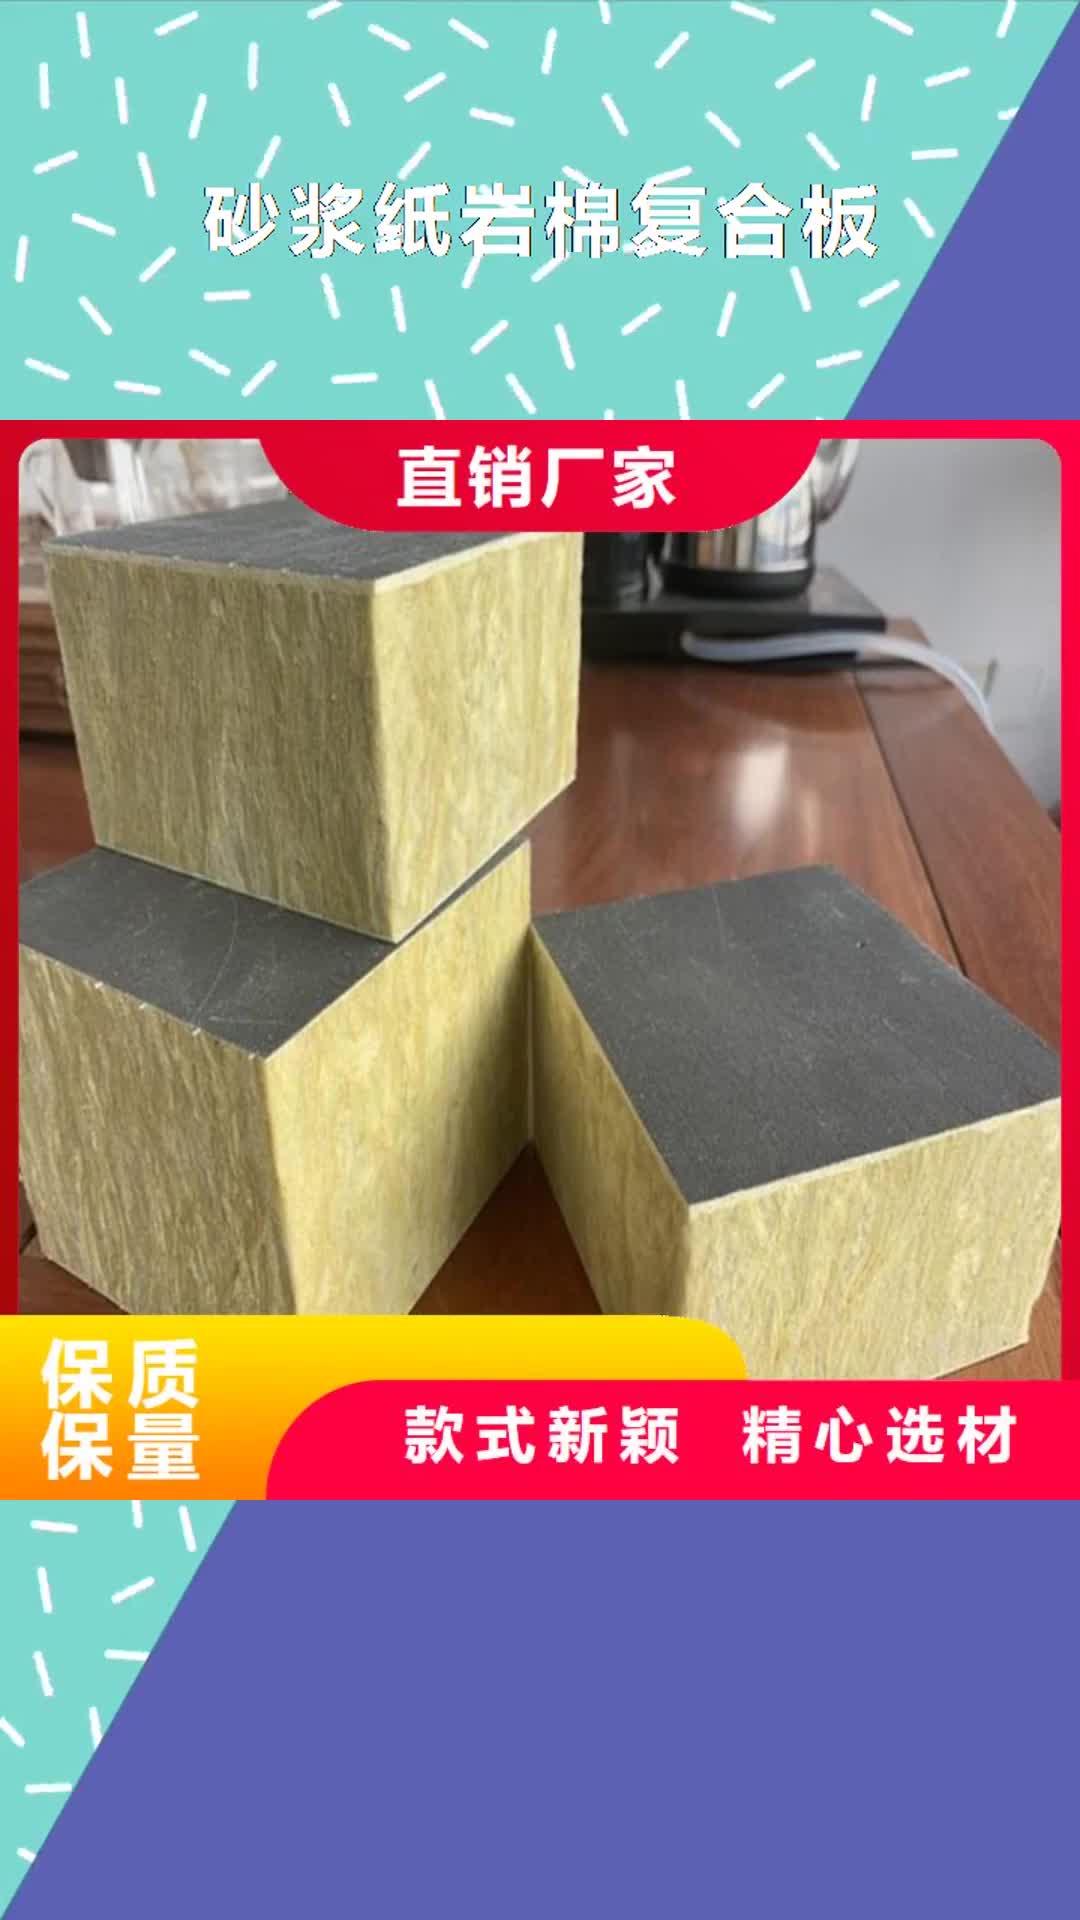 阜阳 砂浆纸岩棉复合板【聚氨酯保温板】分类和特点